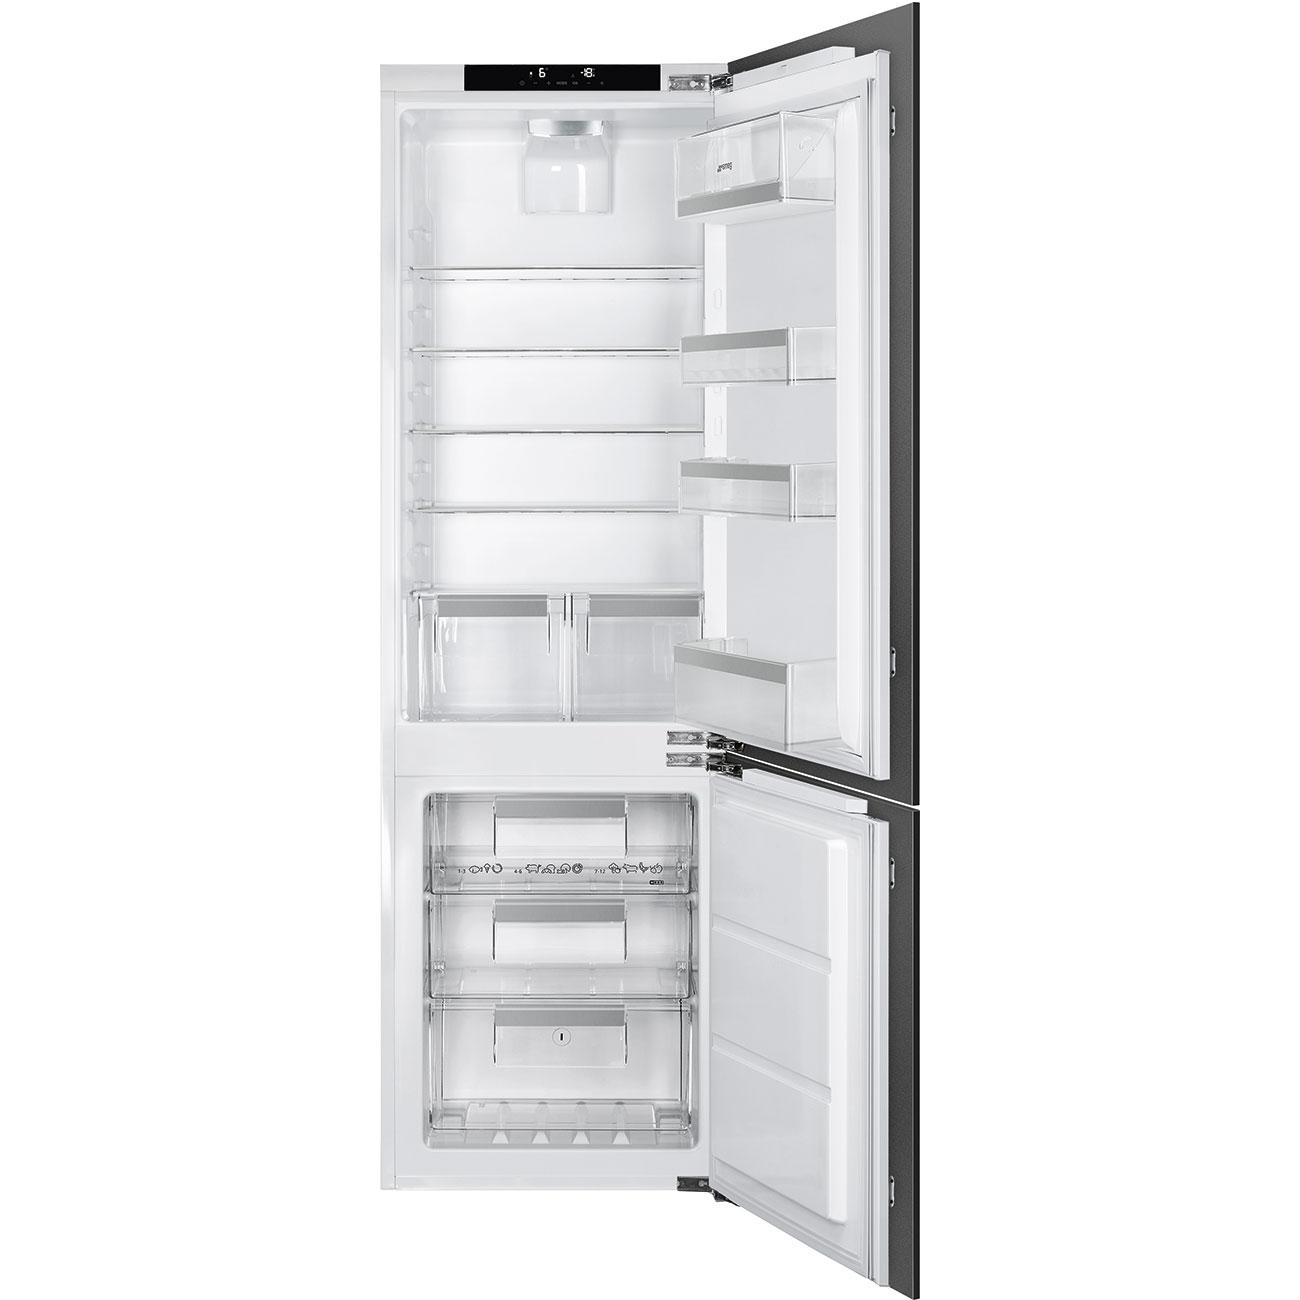 Встраиваемый холодильник Smeg C8174DN2E серебристый логистический сортер формочки